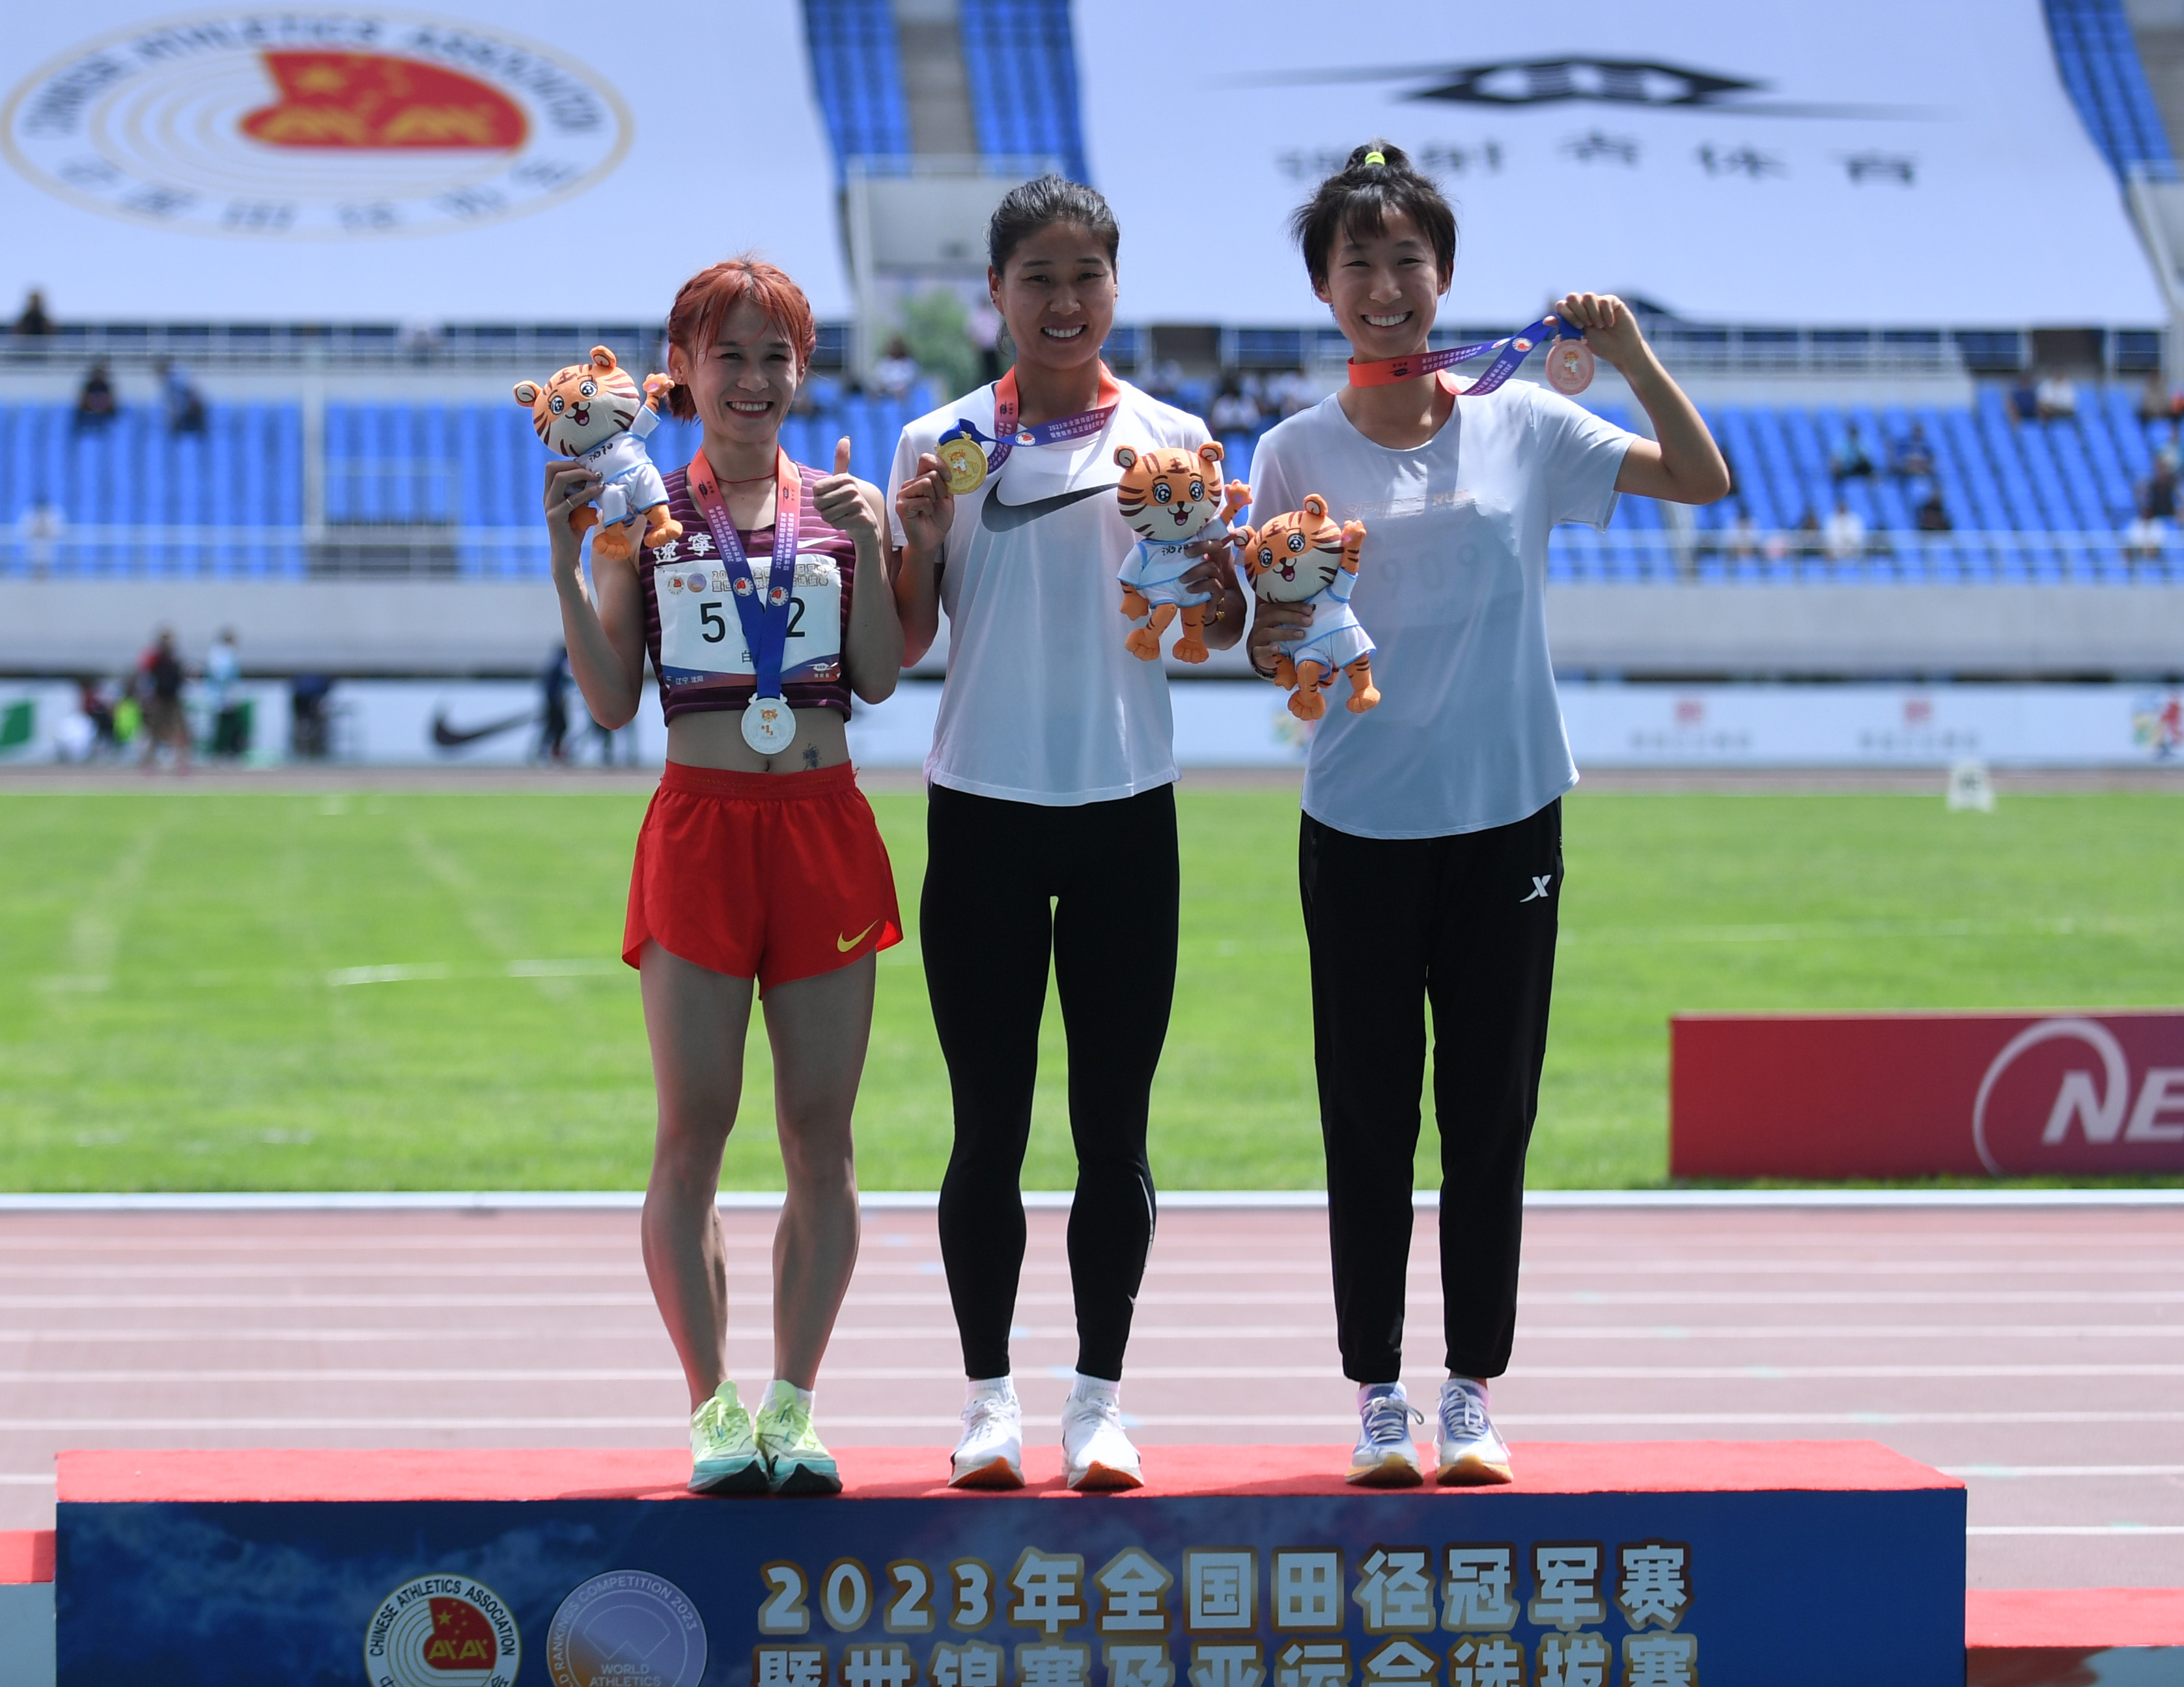 田径——全国冠军赛:张新艳女子3000米障碍夺冠